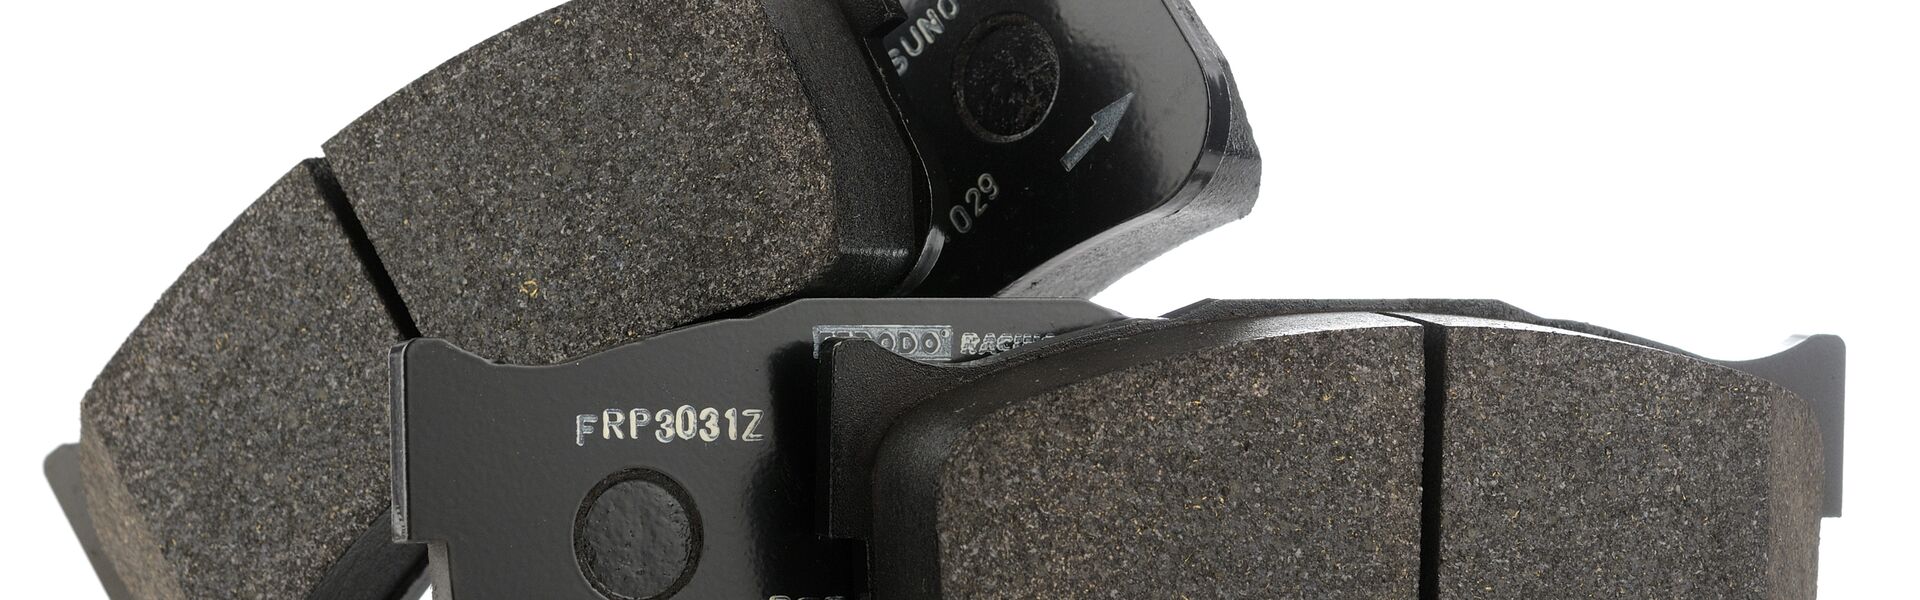 Sada předních destiček Ferodo DS 3000 - náhrada za OEM sériové destičky